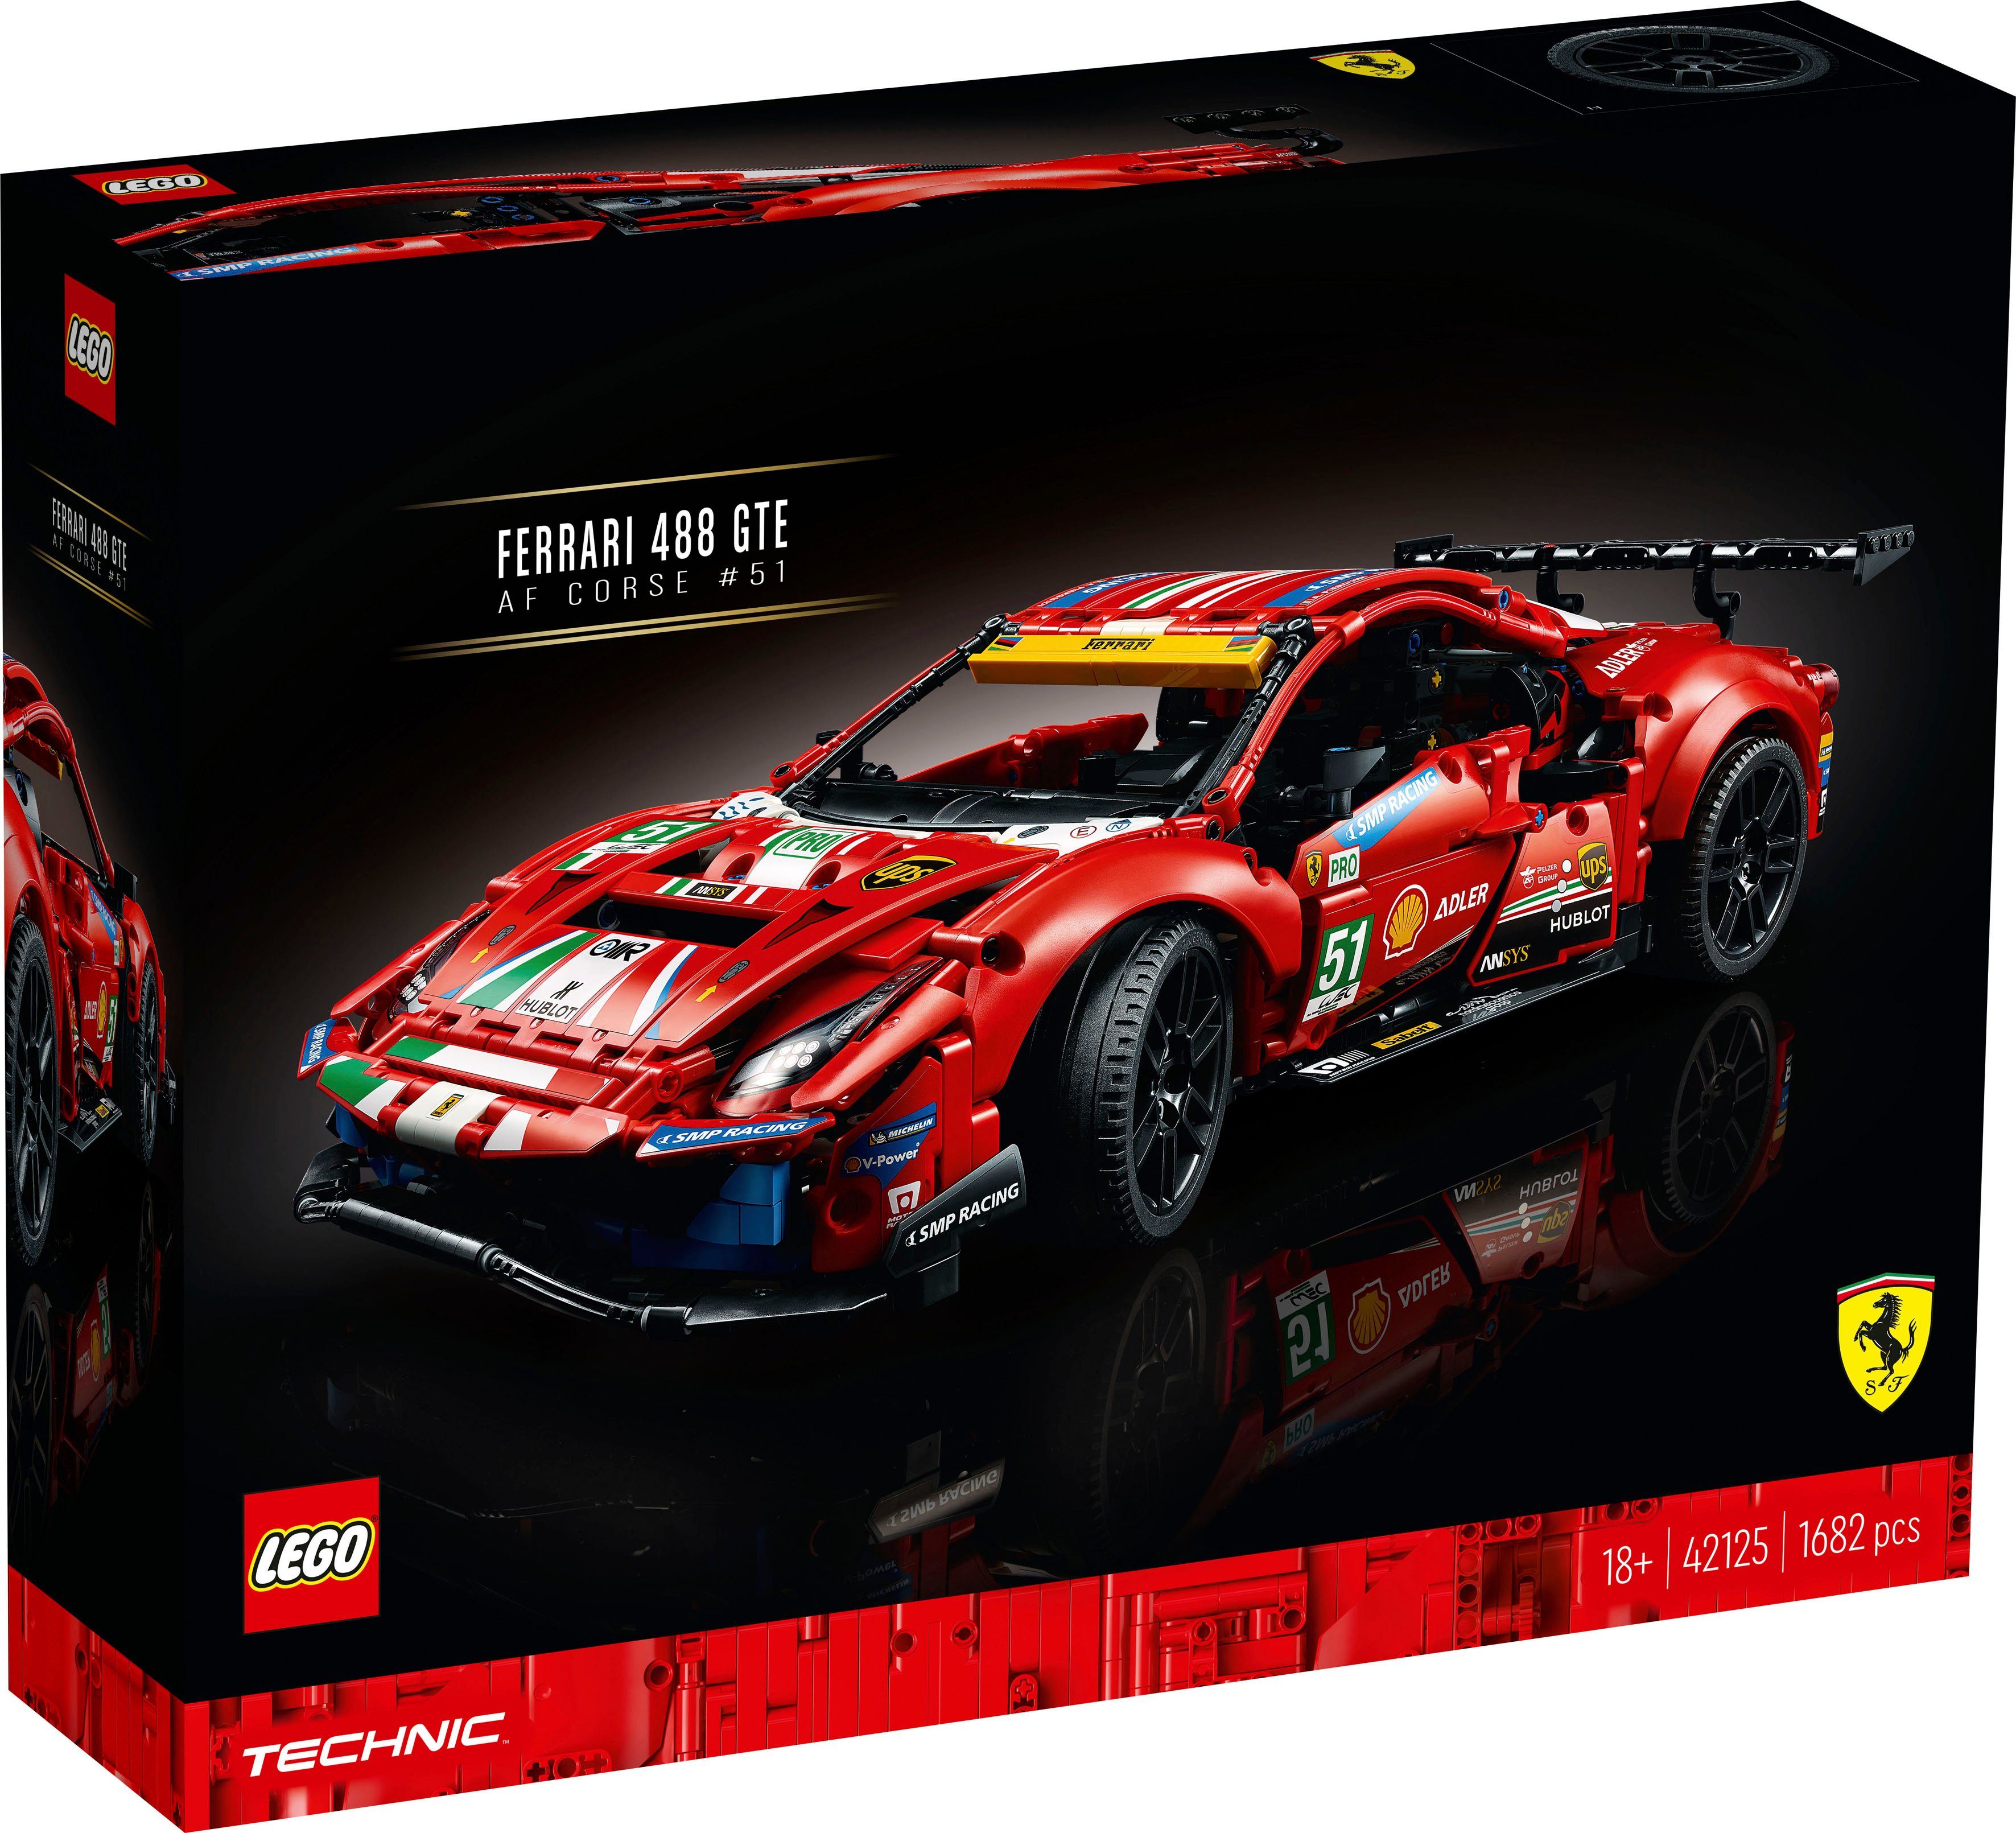 LEGO® Konstruktionsspielsteine Ferrari 488 GTE “AF Corse #51” (42125), LEGO® Technic, (1682 St), Made in Europe